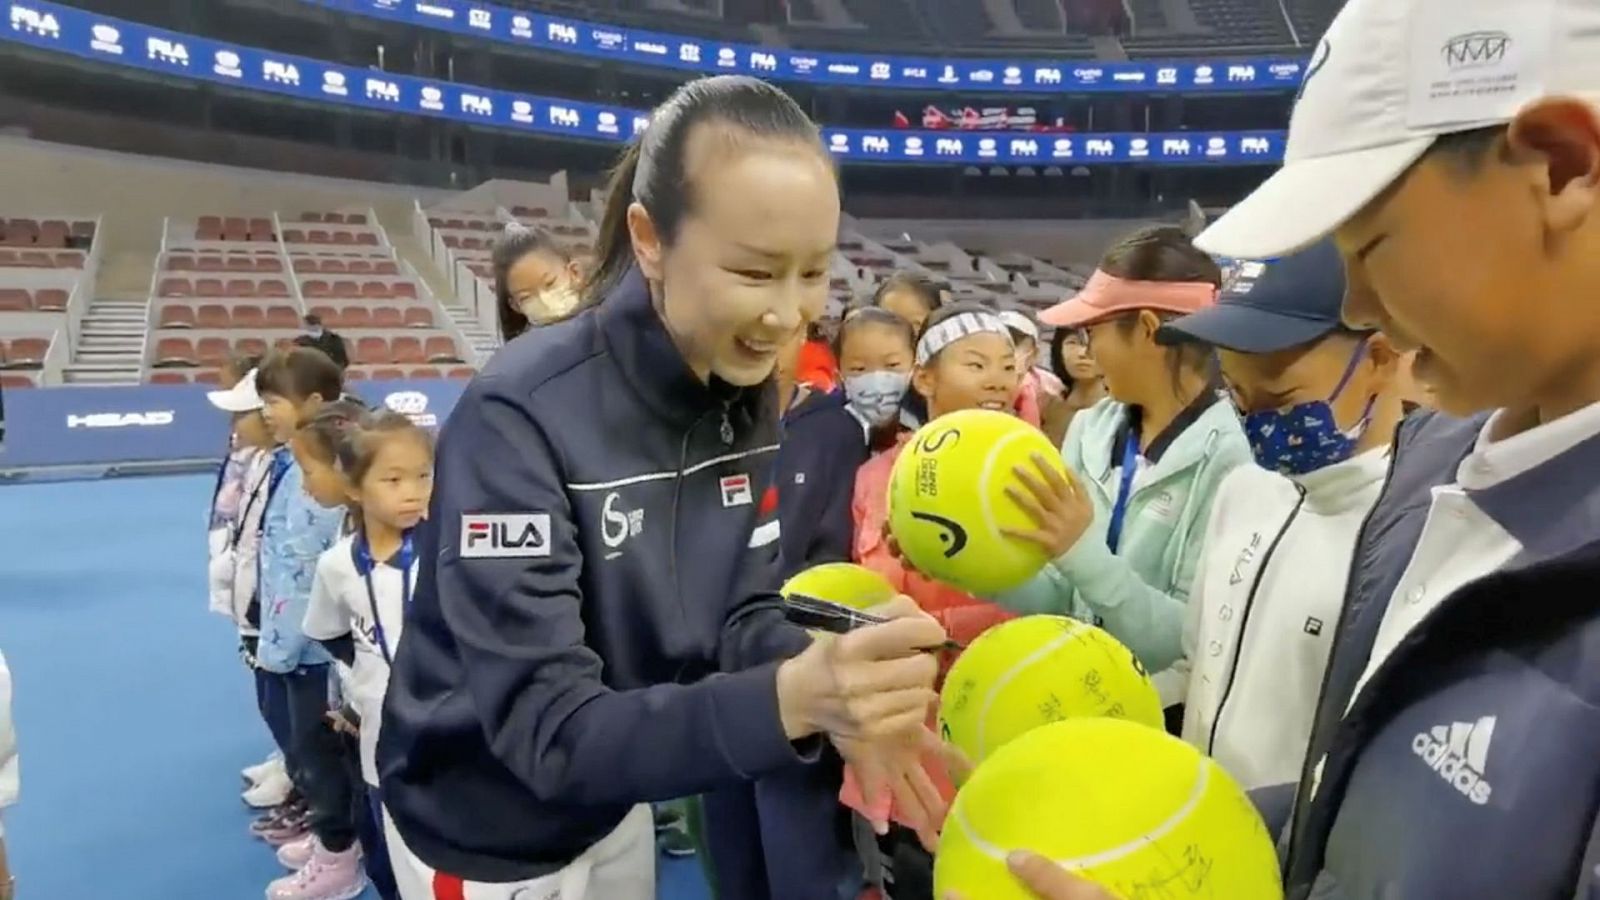 Publican vídeos en un evento deportivo de la tenista Peng Shuai